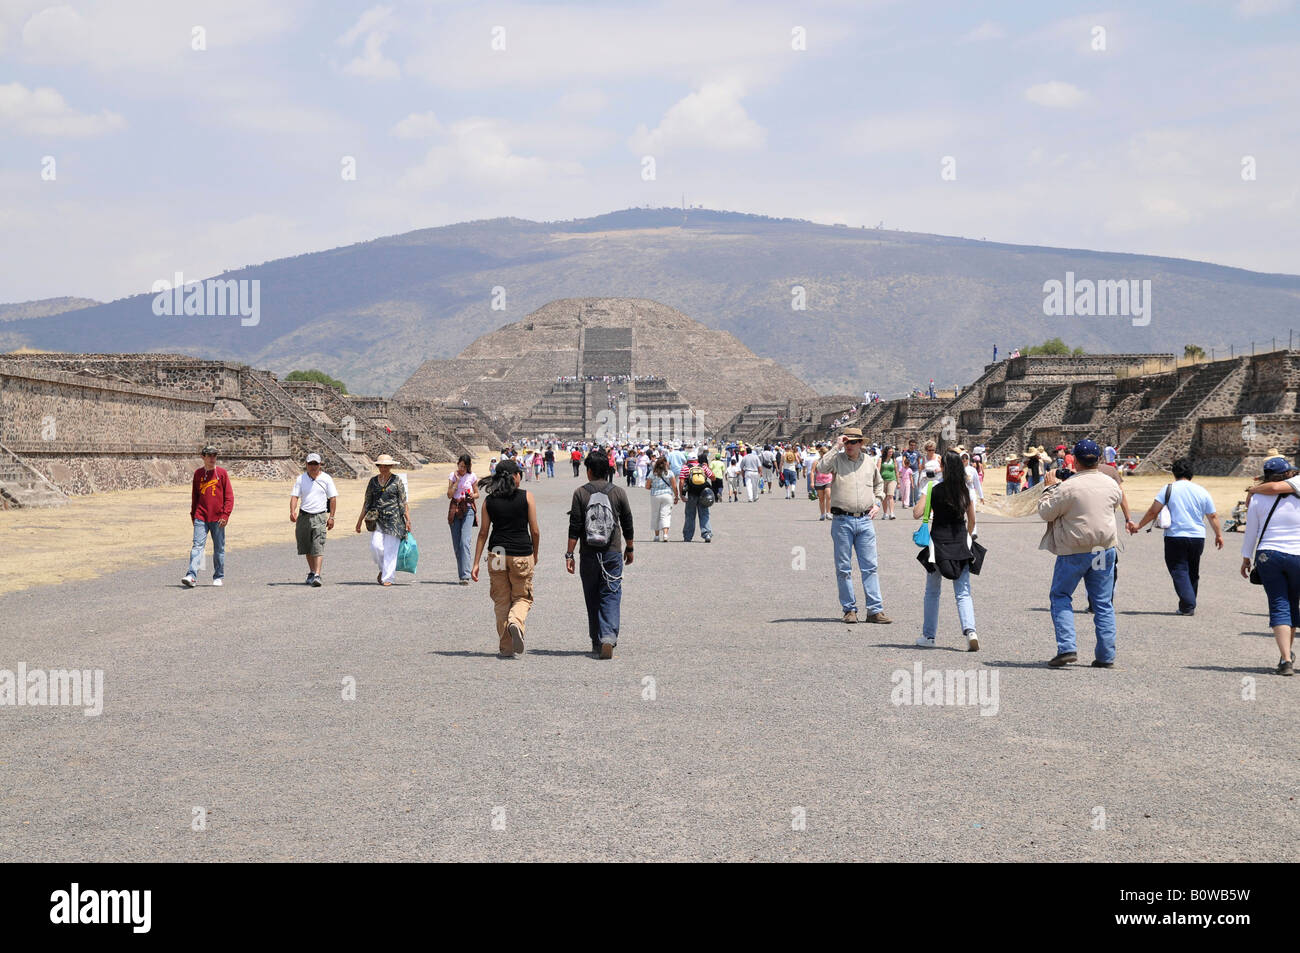 Pyramid of the Moon, Calzada de los Muertos, Avenue of the Dead, Teotihuacan, Mexico, North America Stock Photo